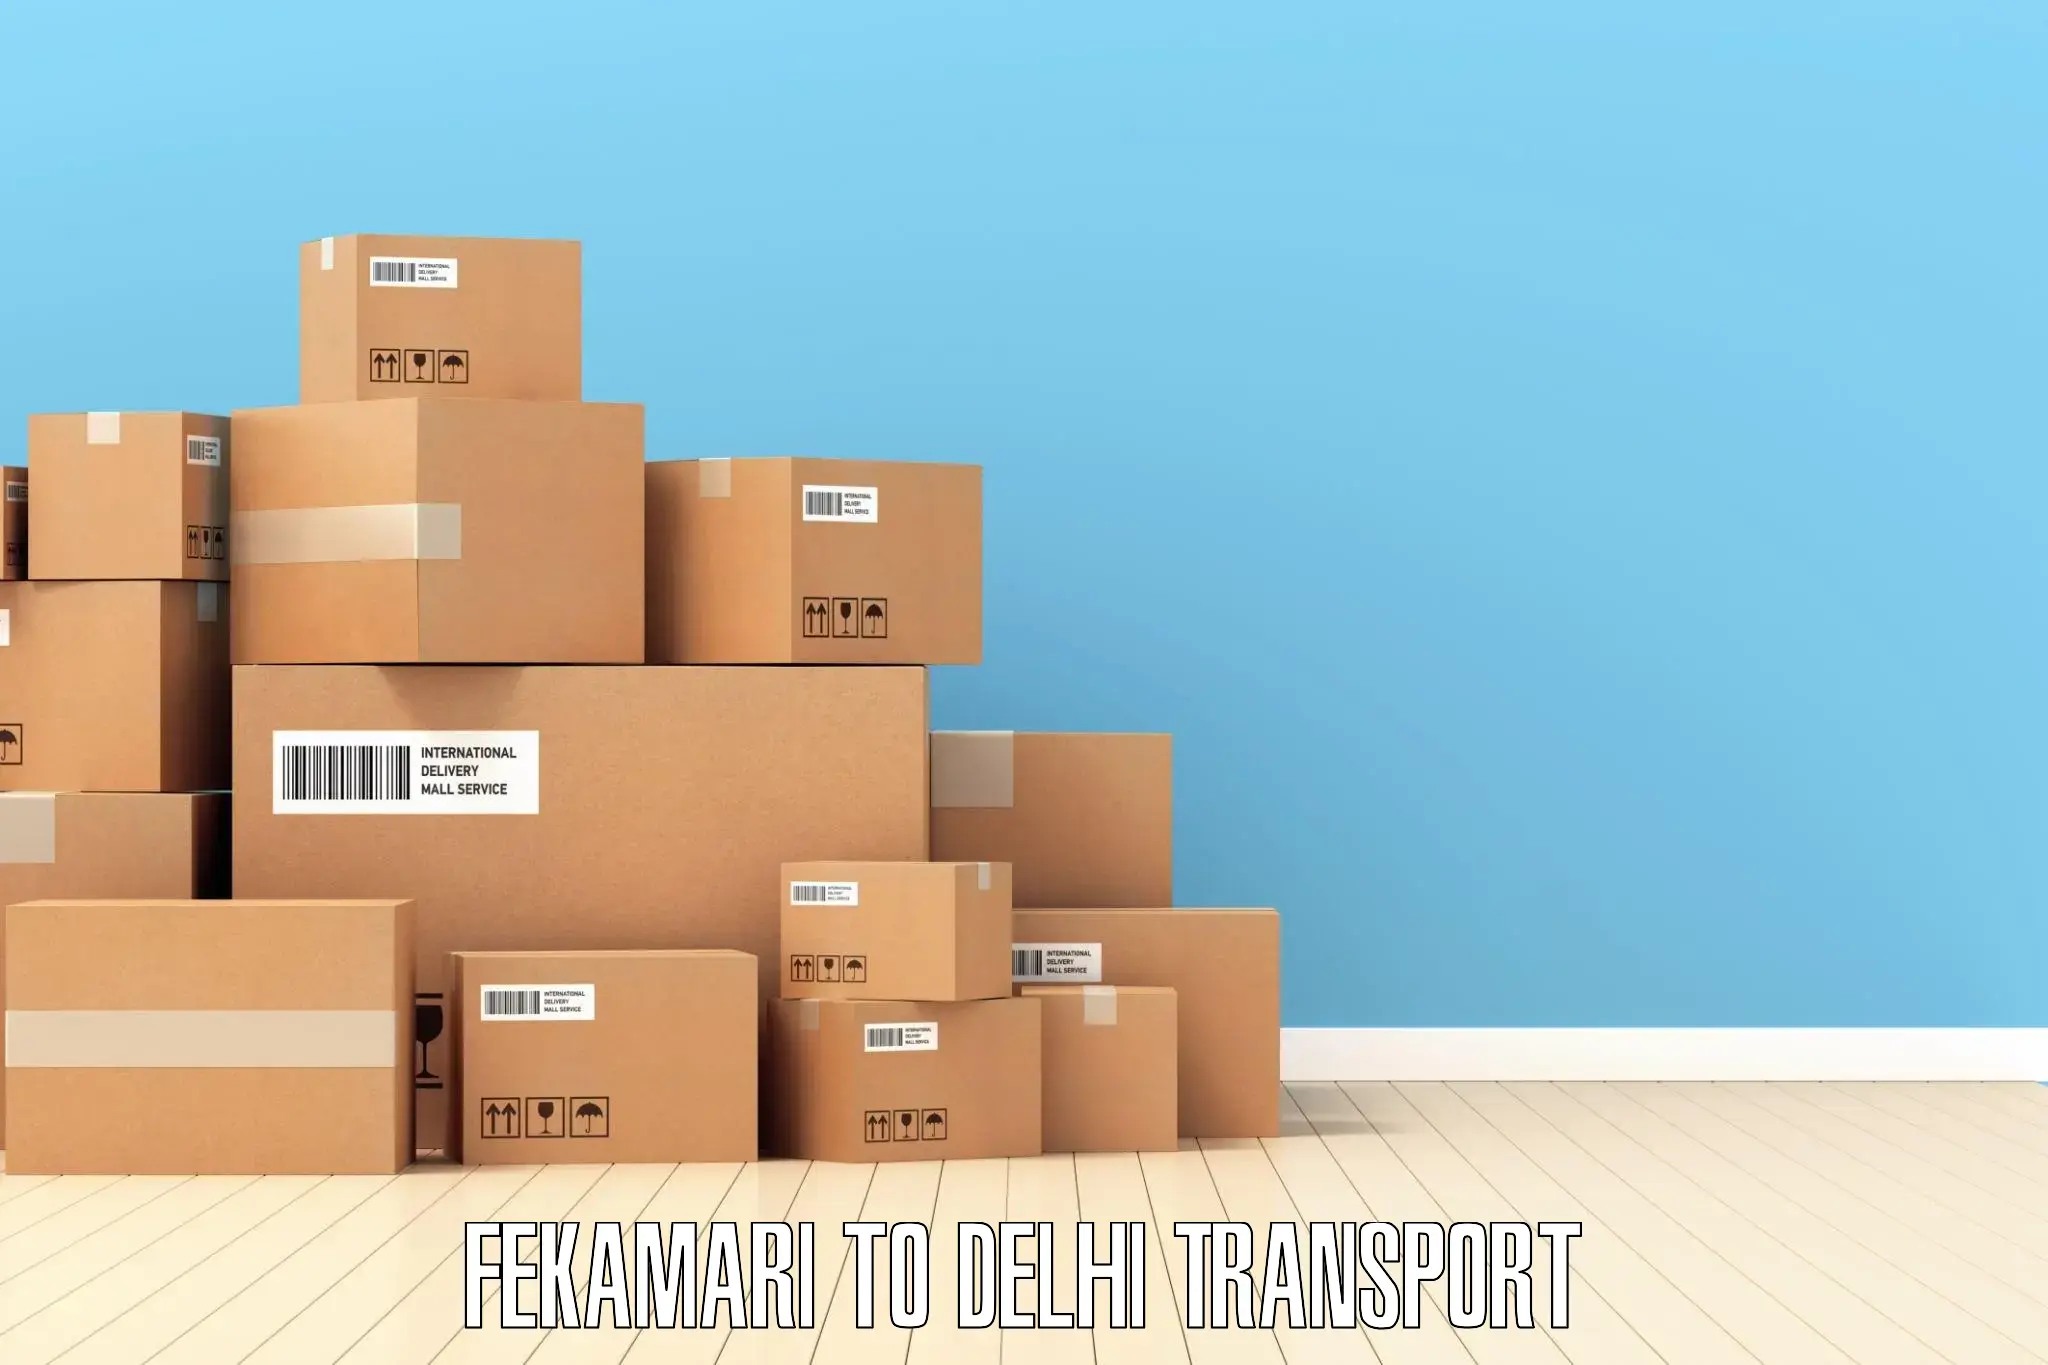 Online transport booking Fekamari to Indraprastha